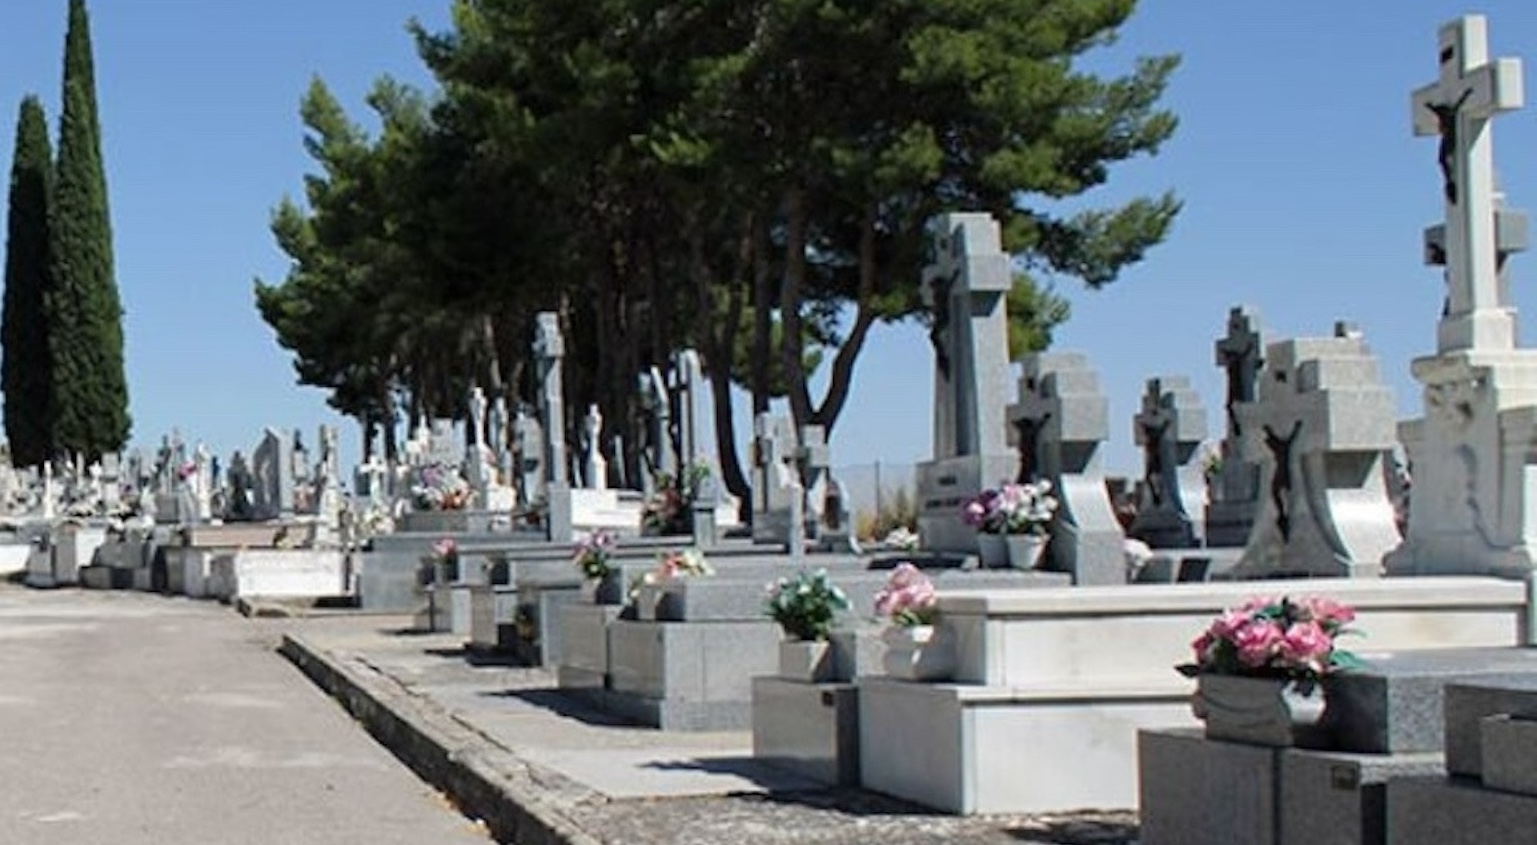 Como no tienen enterrador en el cementerio, los vecinos están obligados a enterrar a su familiar fallecido